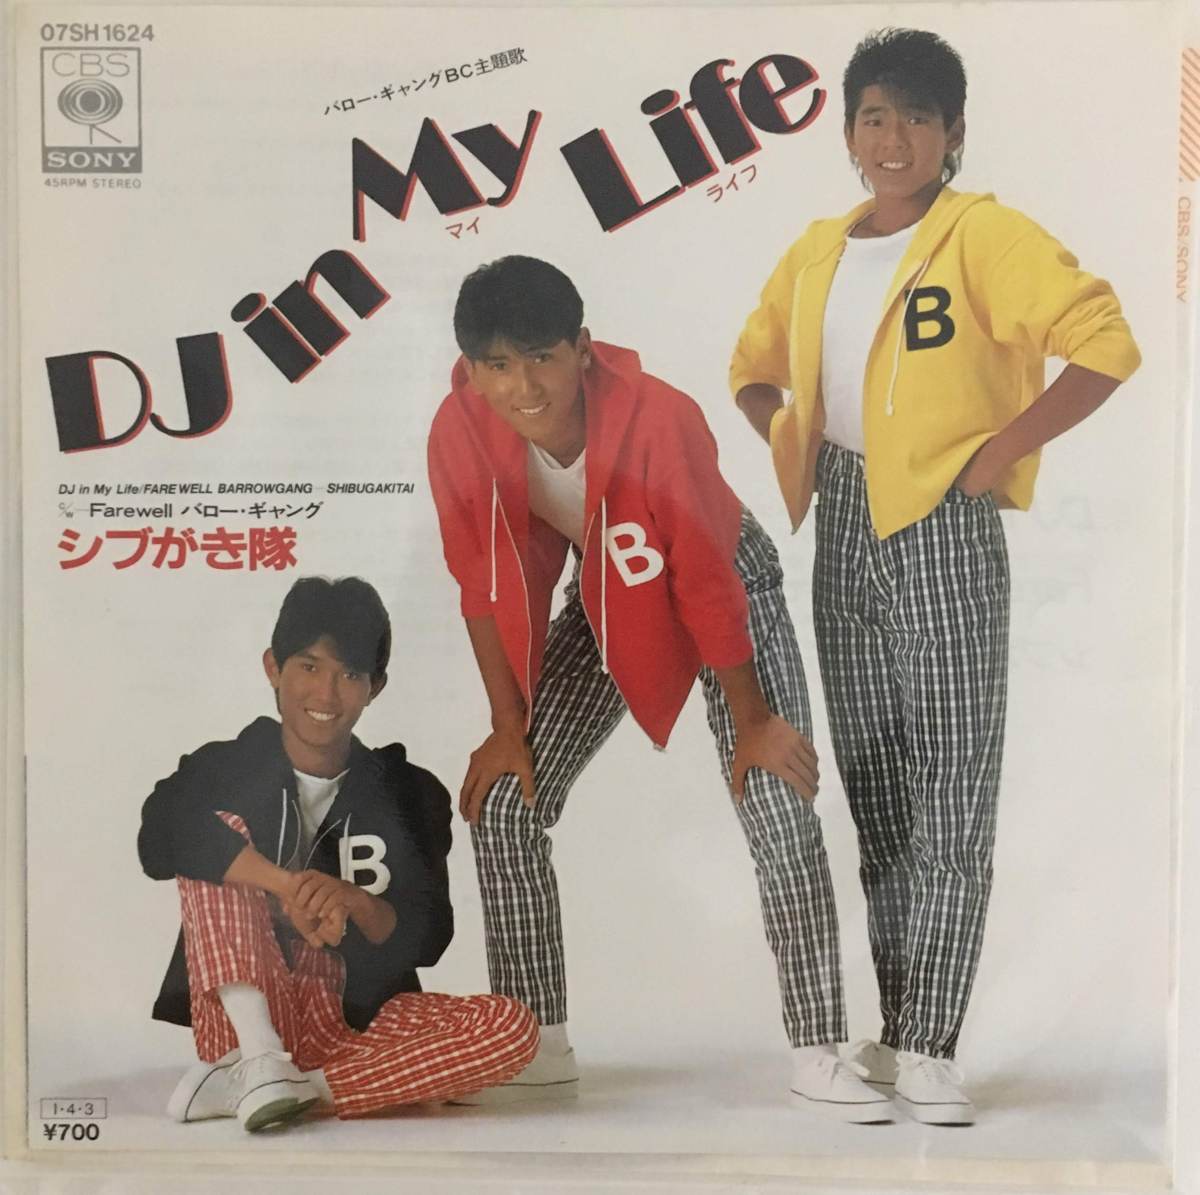 【7】シブがき隊/DJ in My Life